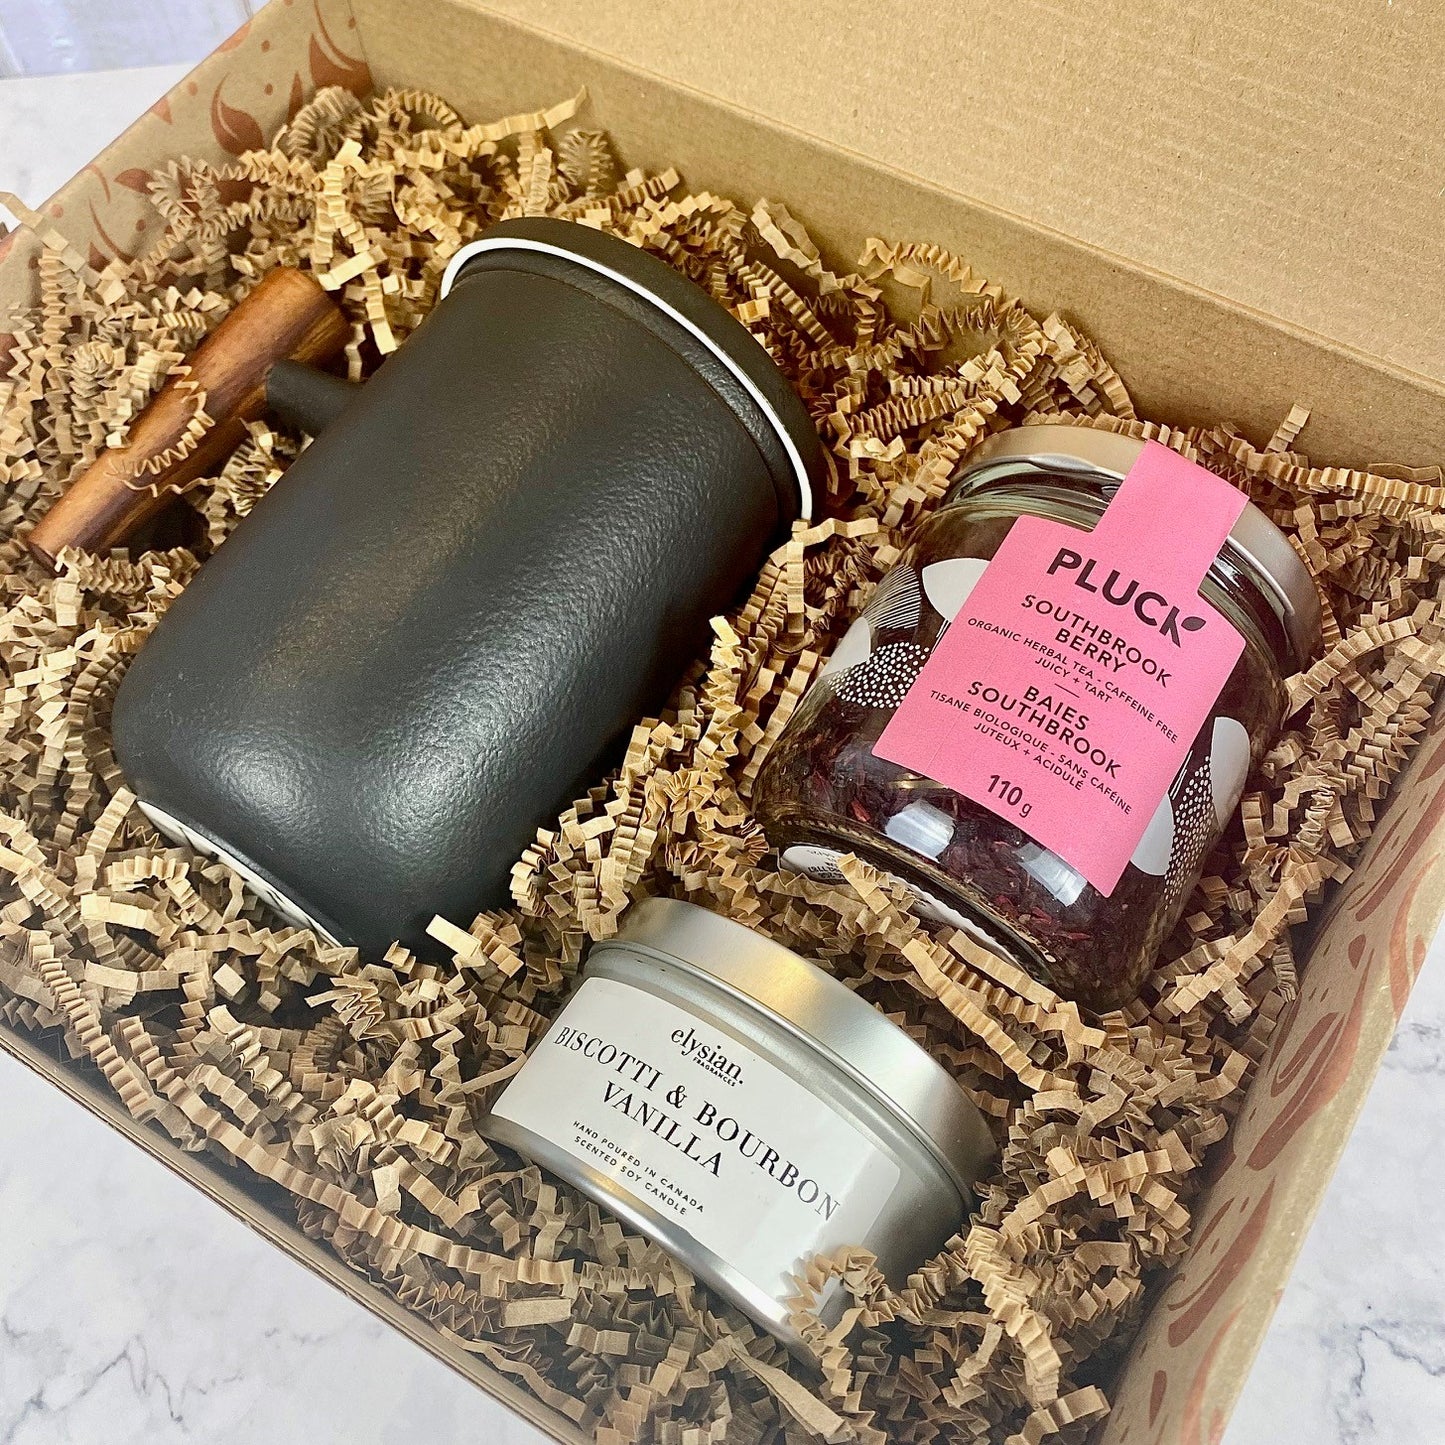 Gift Box "Tea Time" - Ceramic Mug & Tea *Limited Edition*